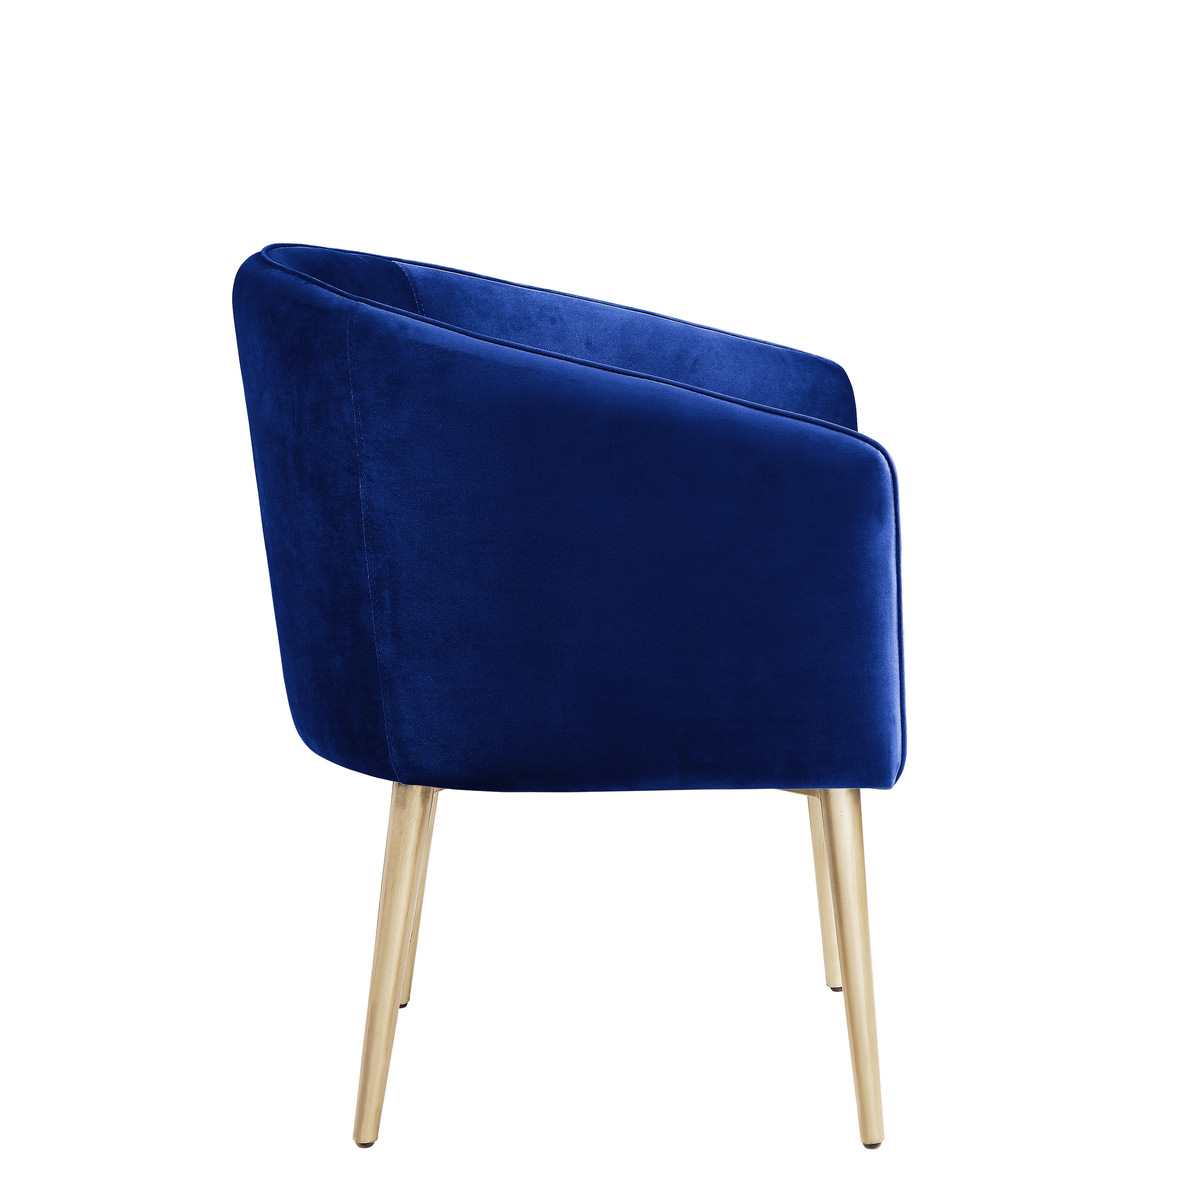 Nikki Accent Chair Blue 1141